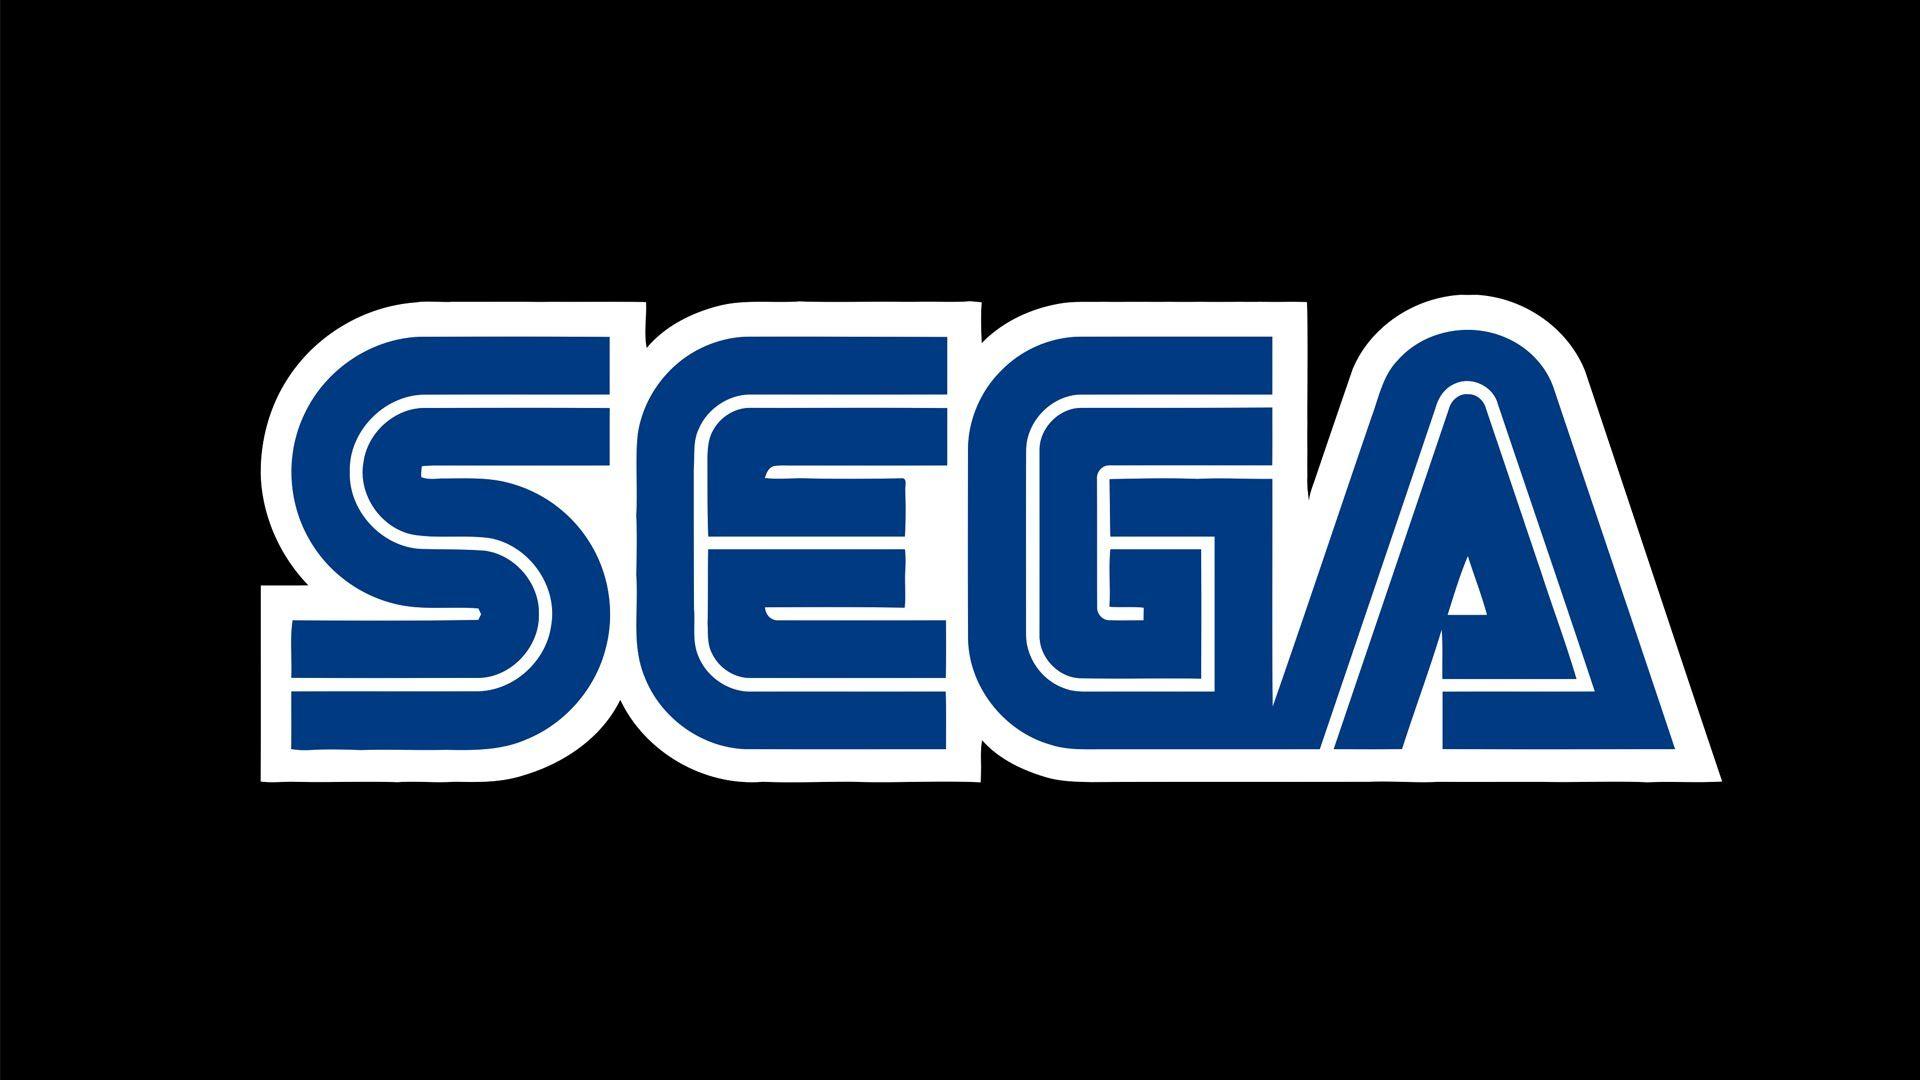 All Sega Genesis games